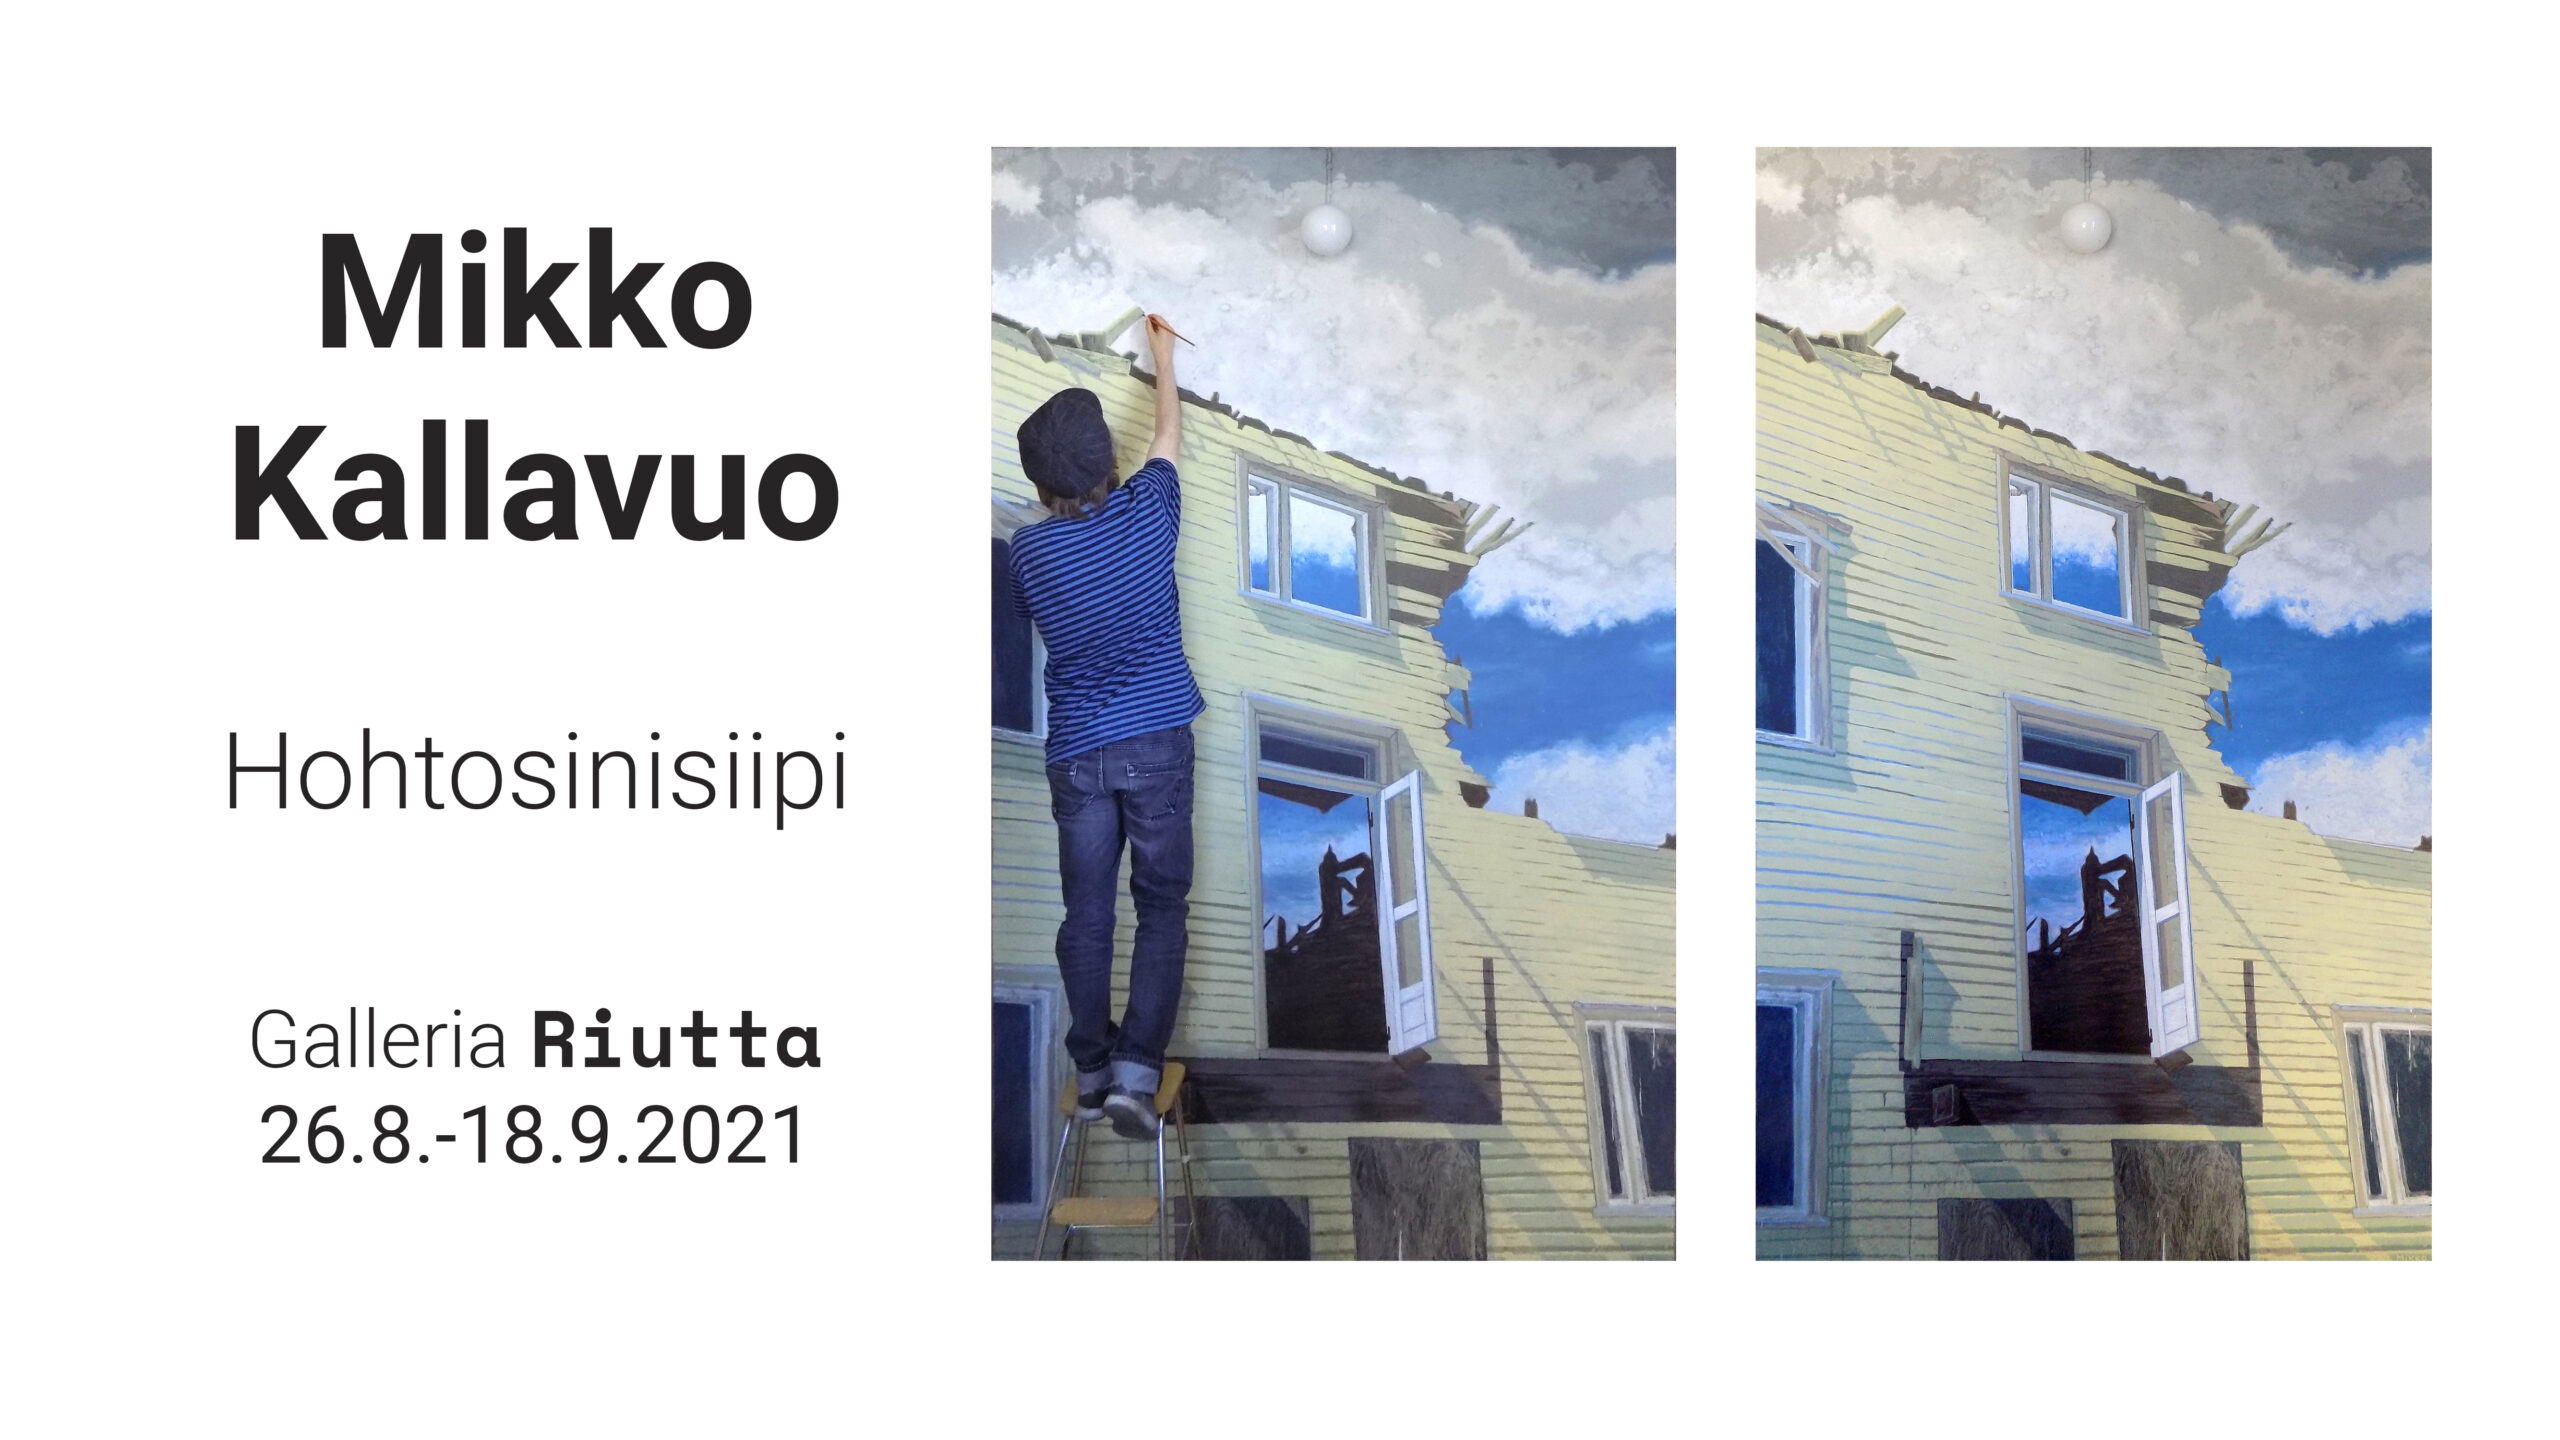 RIUTTA – Mikko Kallavuo — Hohtosinisiipi 26.8. -18.9.2021